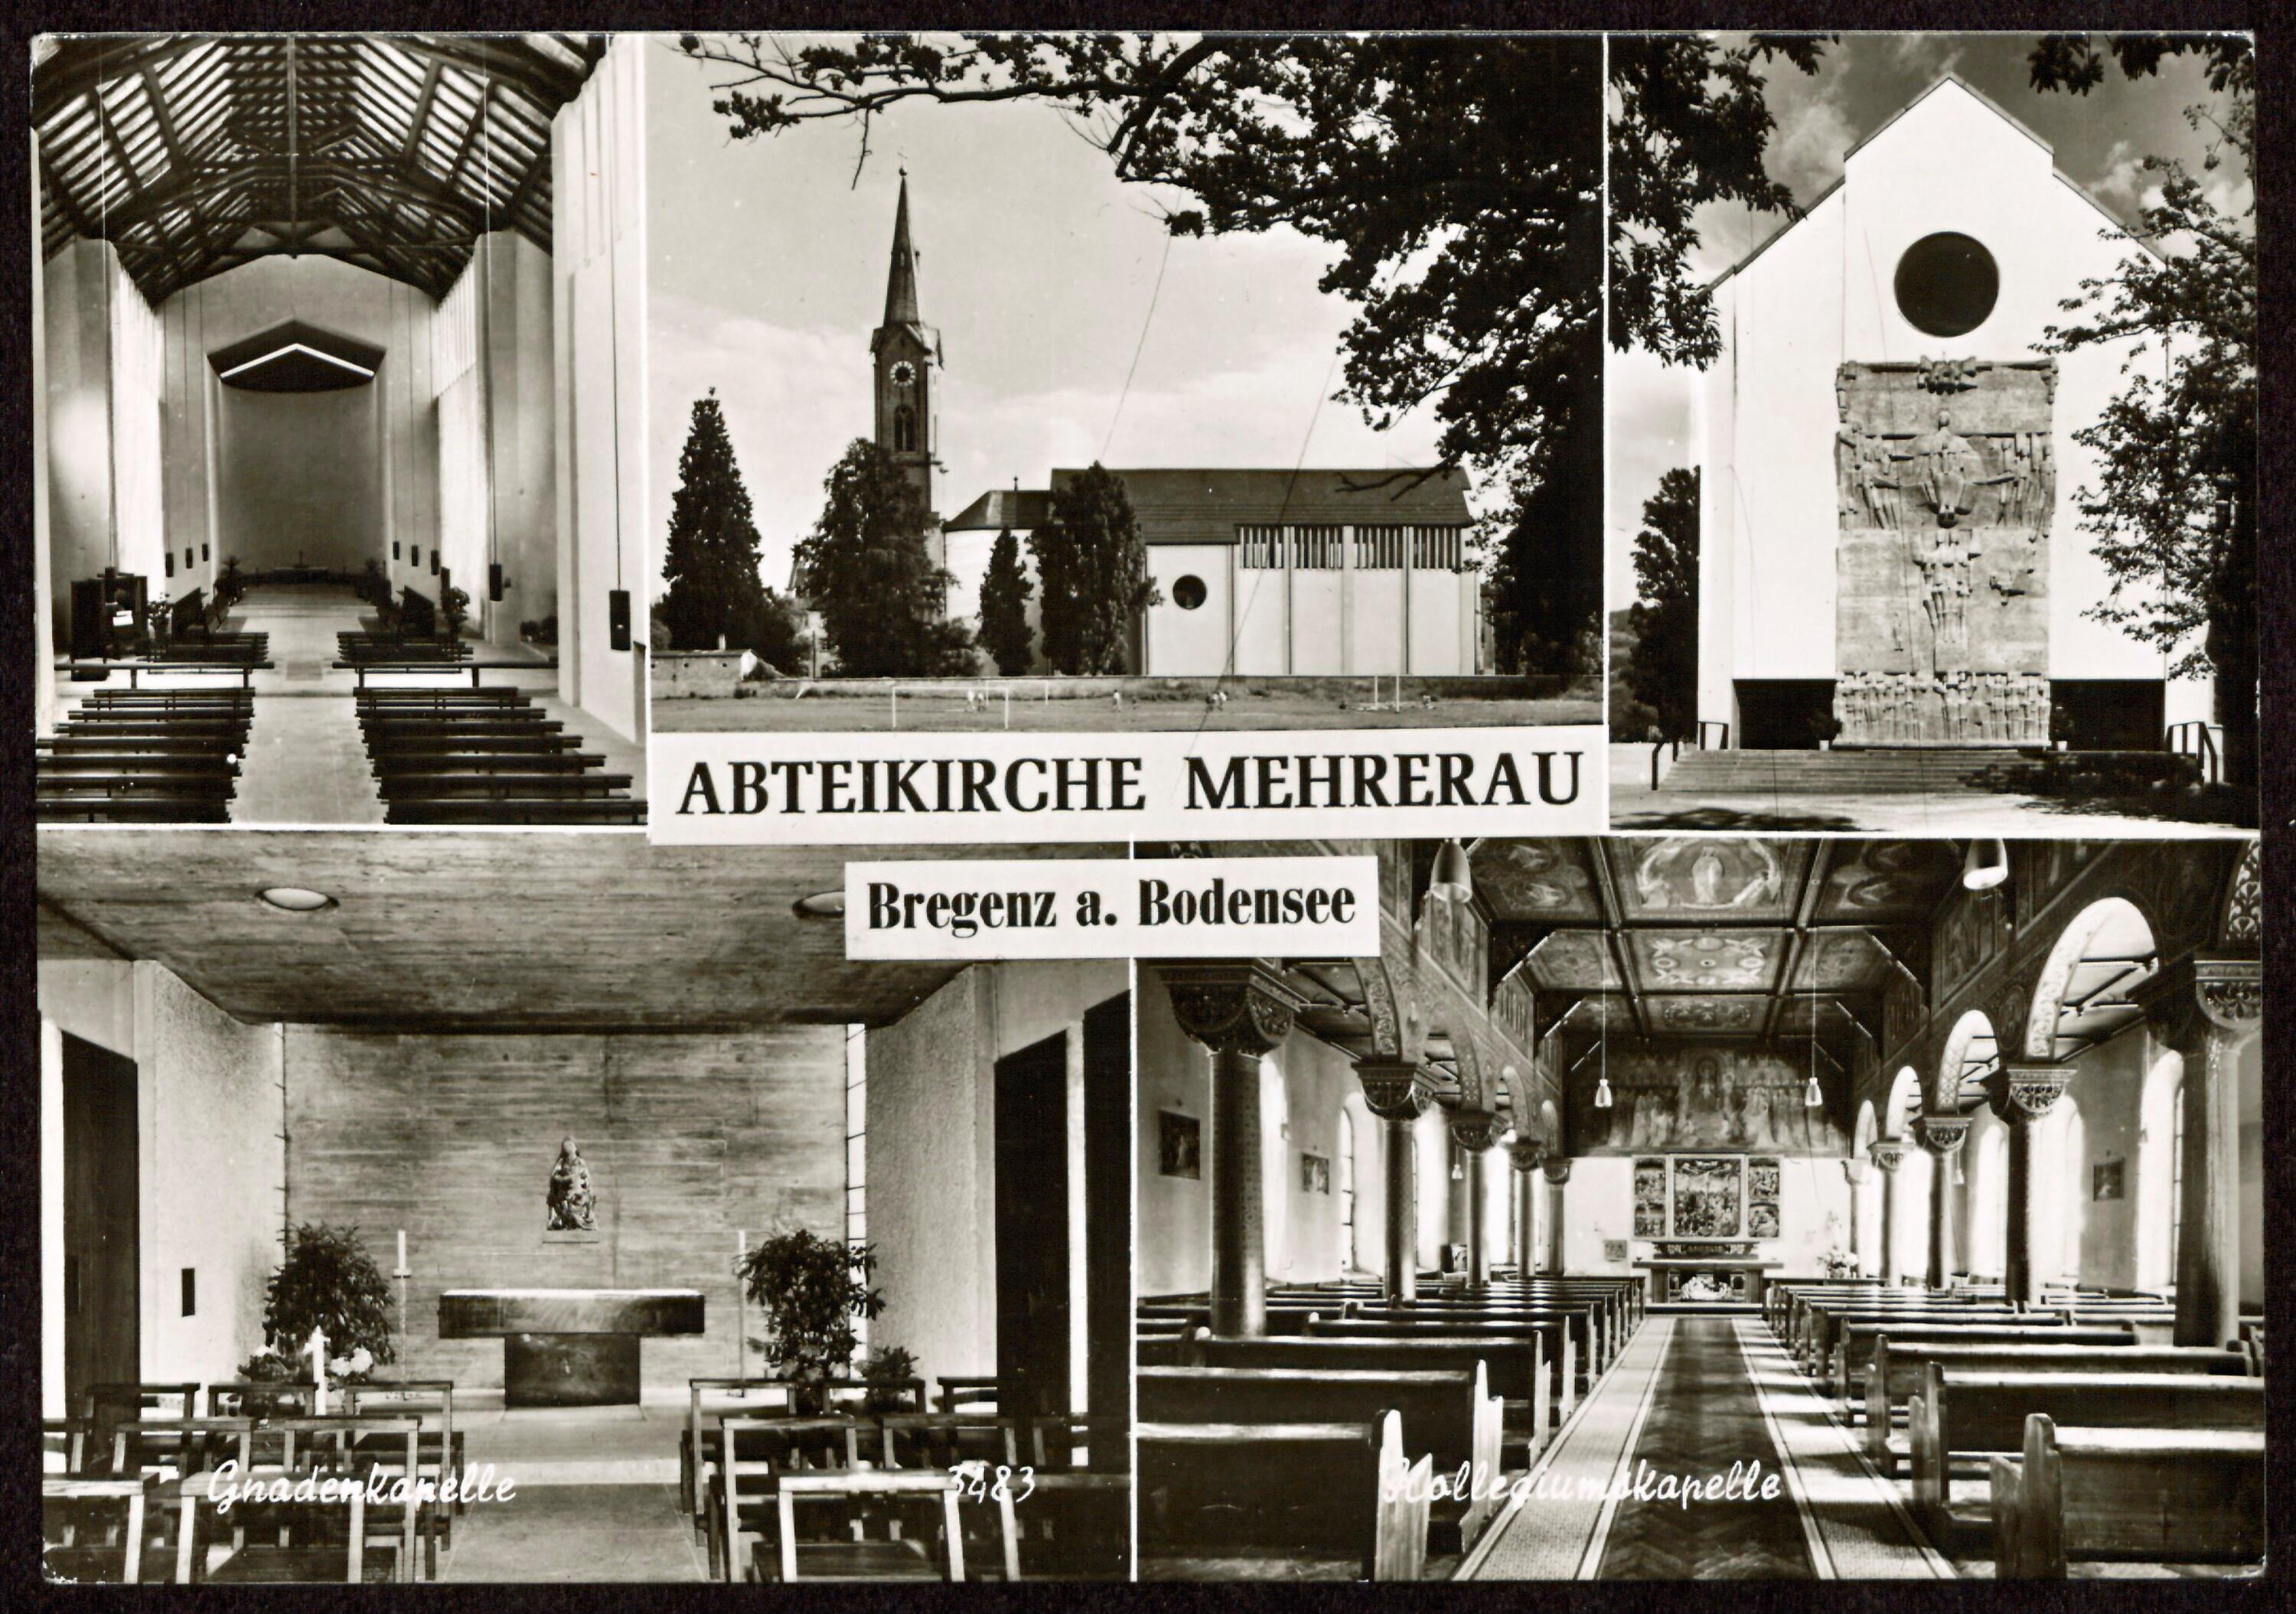 Abteikirche Mehrerau></div>


    <hr>
    <div class=